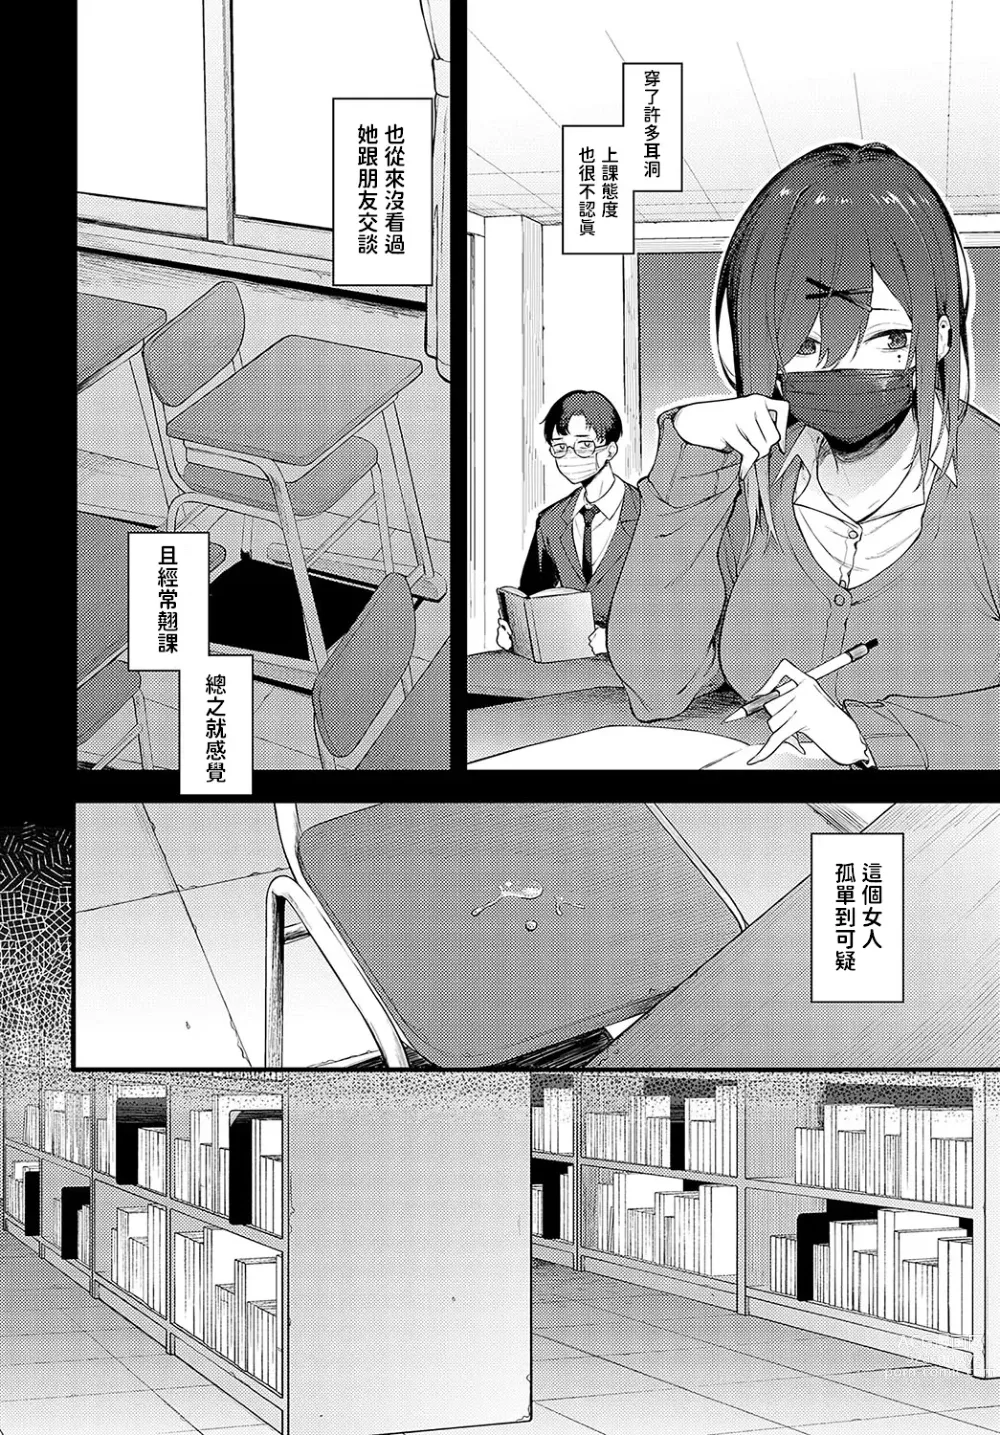 Page 2 of manga Tana no Mukou, Nuno no Mukou